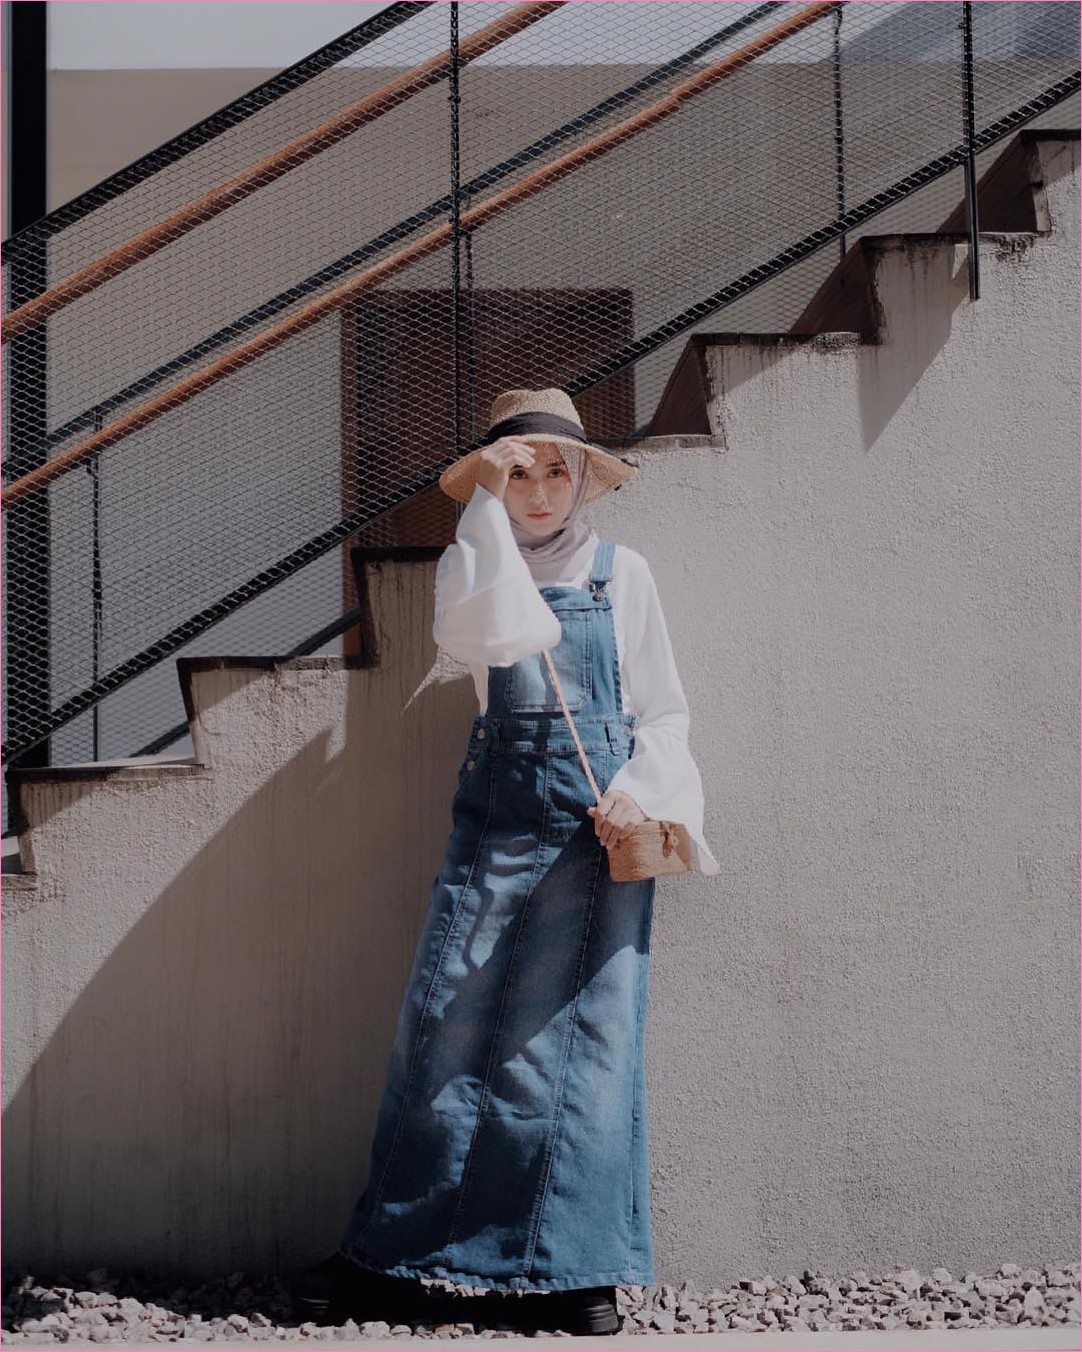  Kumpulan model dan gaya outfit Jumpsuit Berhijab yang sering dikenakan oleh Selebgram di  17 Gaya Outfit Baju Jumpsuit Berhijab Ala Selebgram 2018